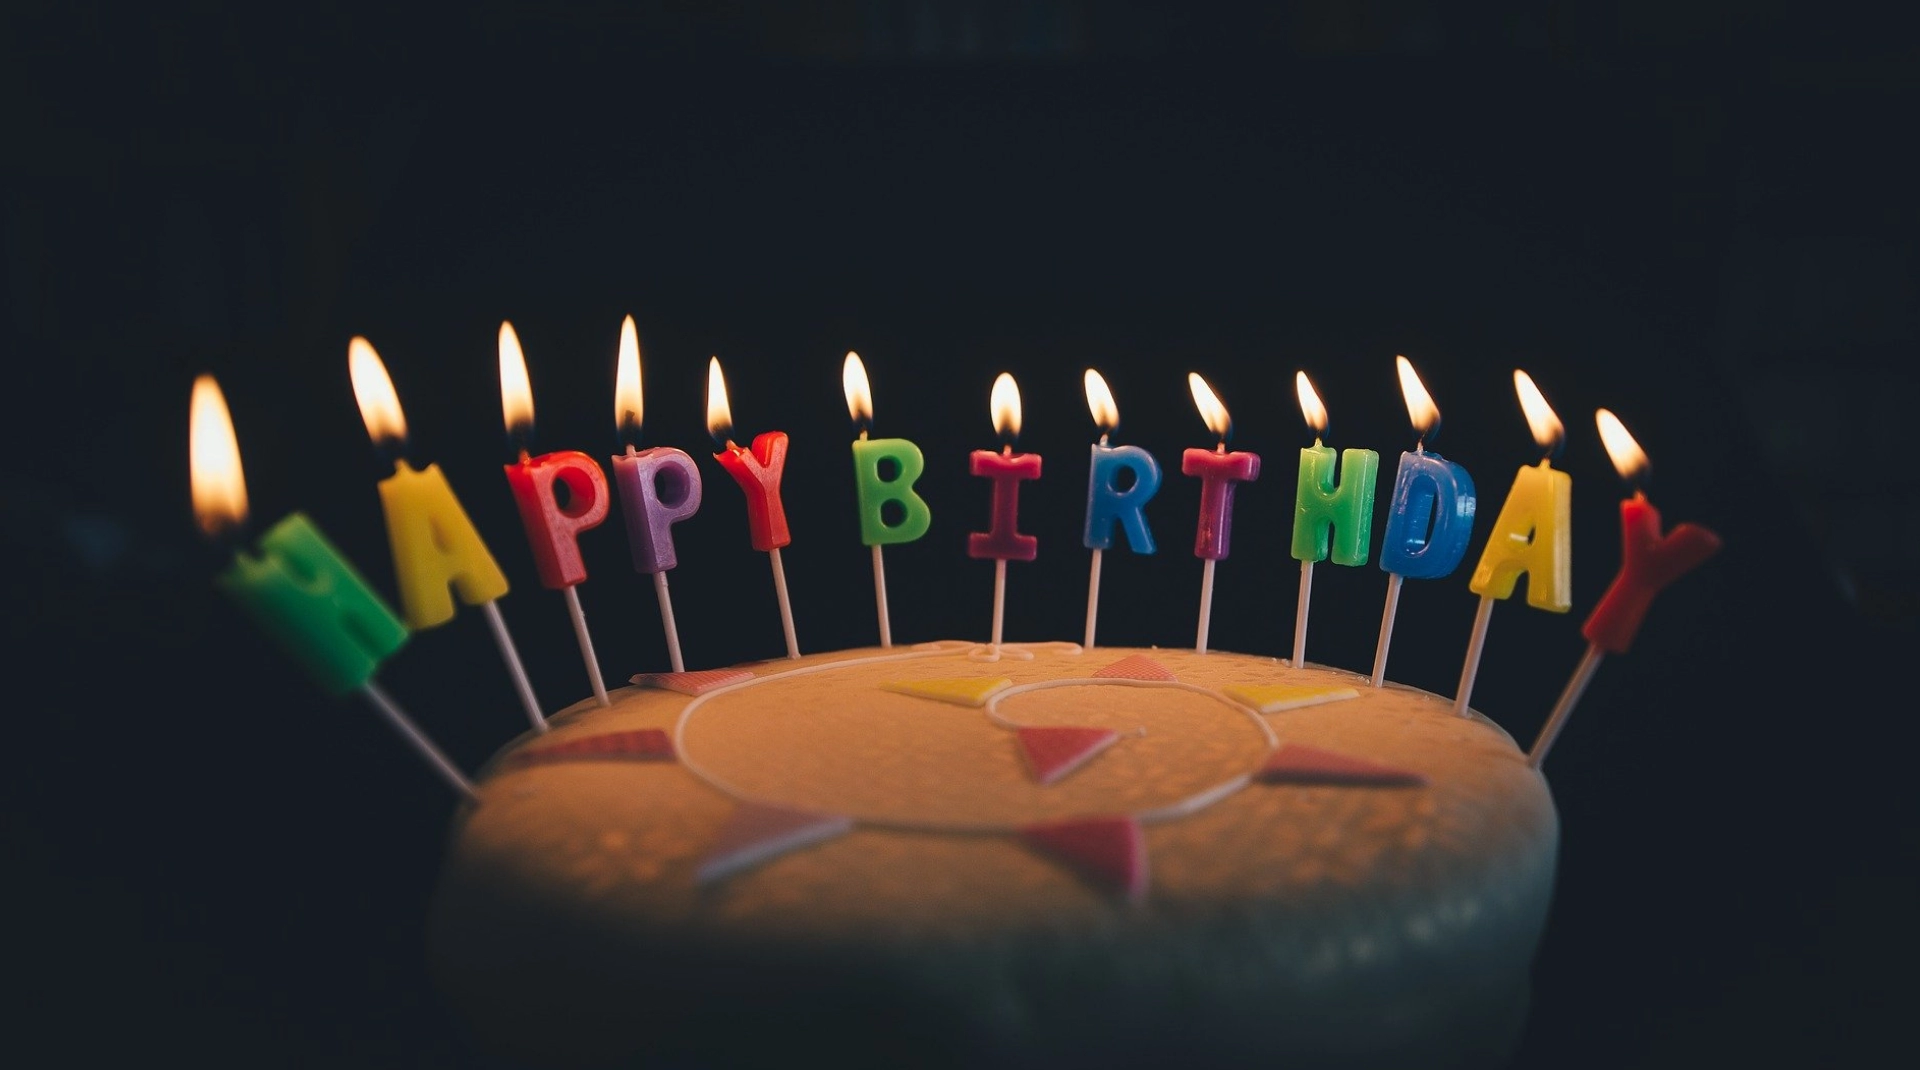 Первое название Google, смена дня рождения, 4000 дудлов – сегодня «Гуглу» 23 года!